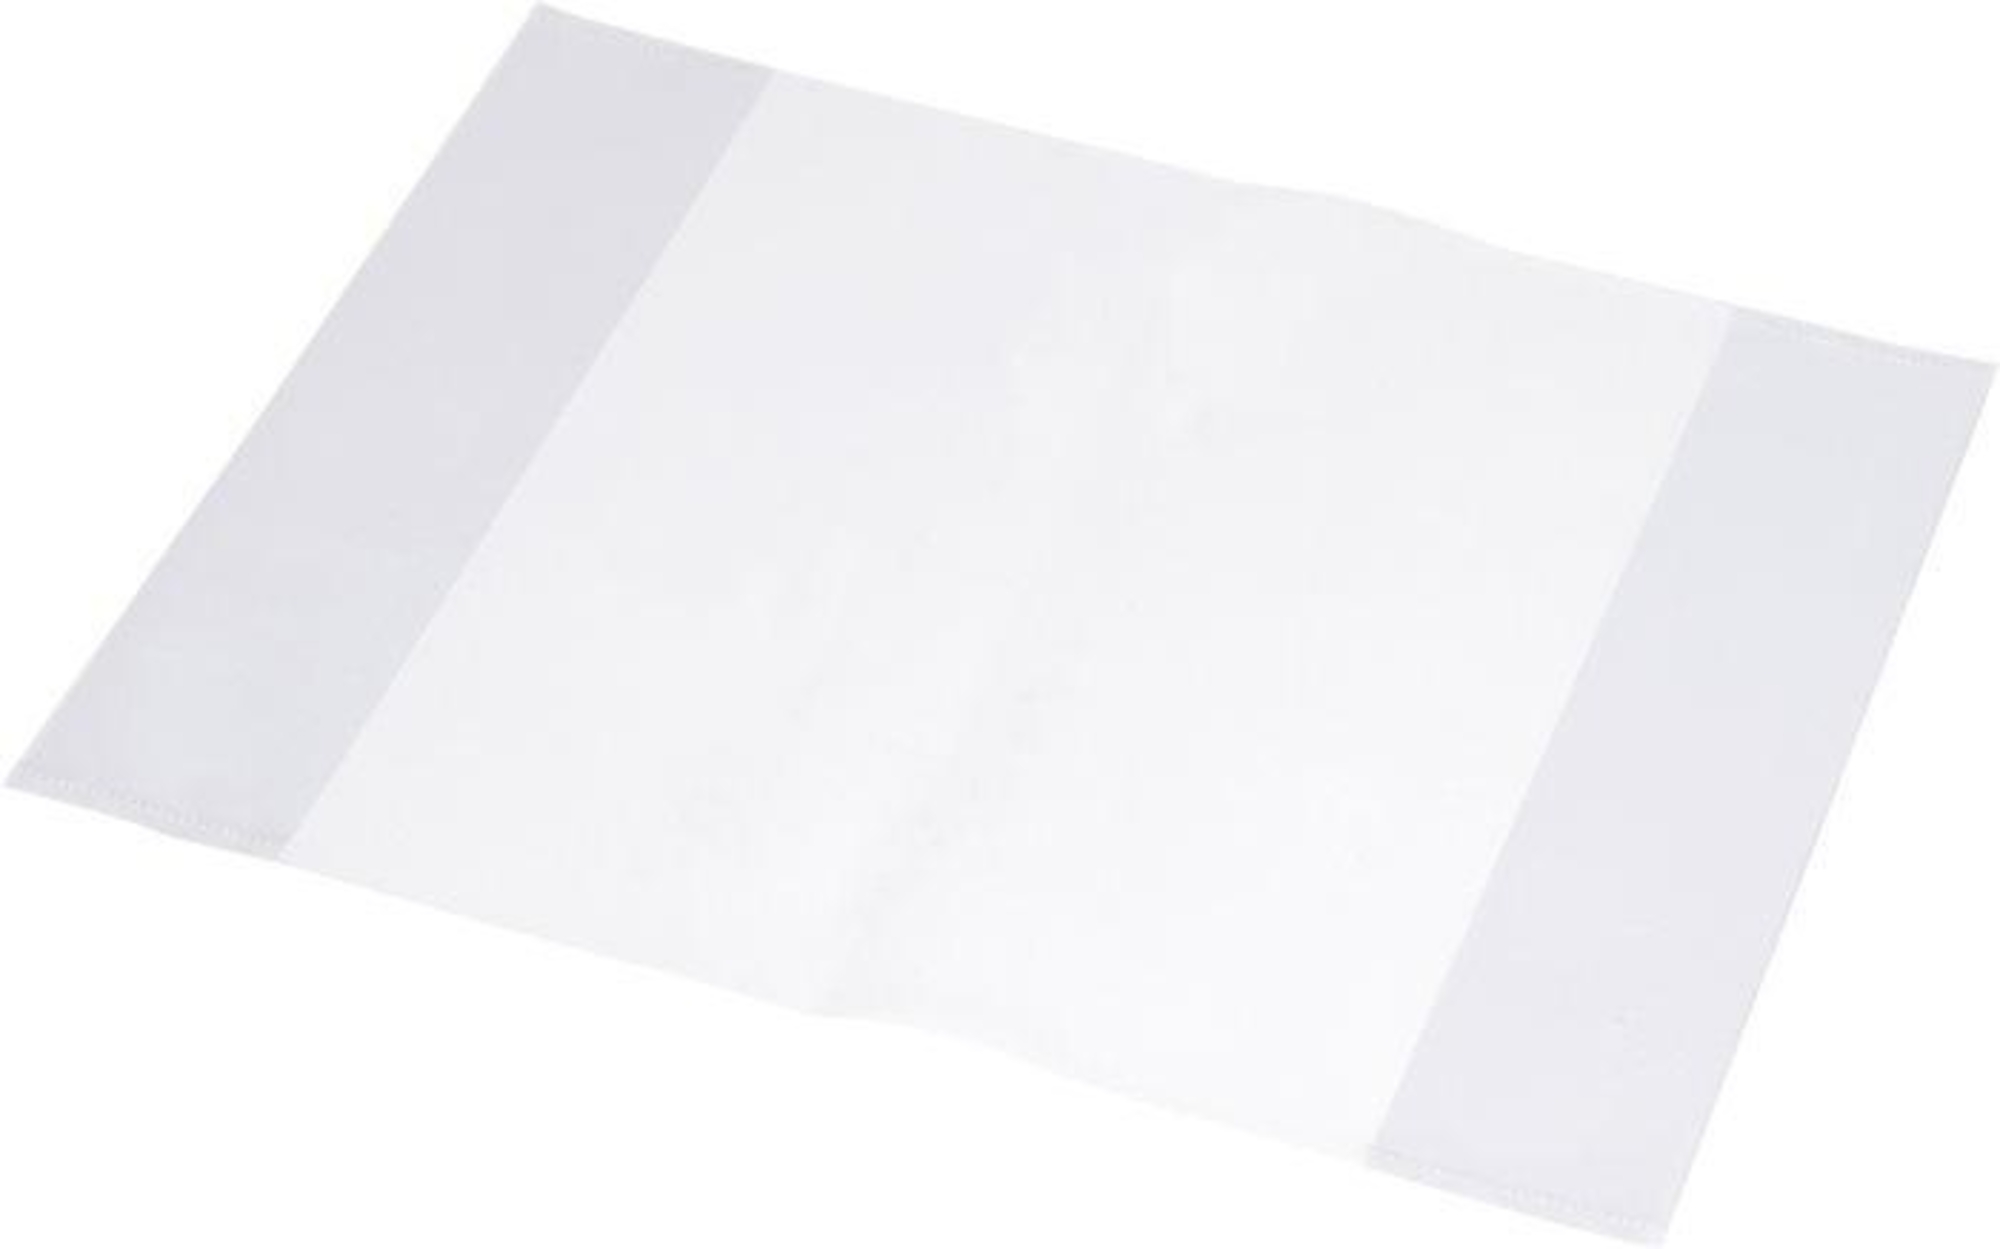 Panta plast Obaly na sešity A5, transparentní, 10 ks